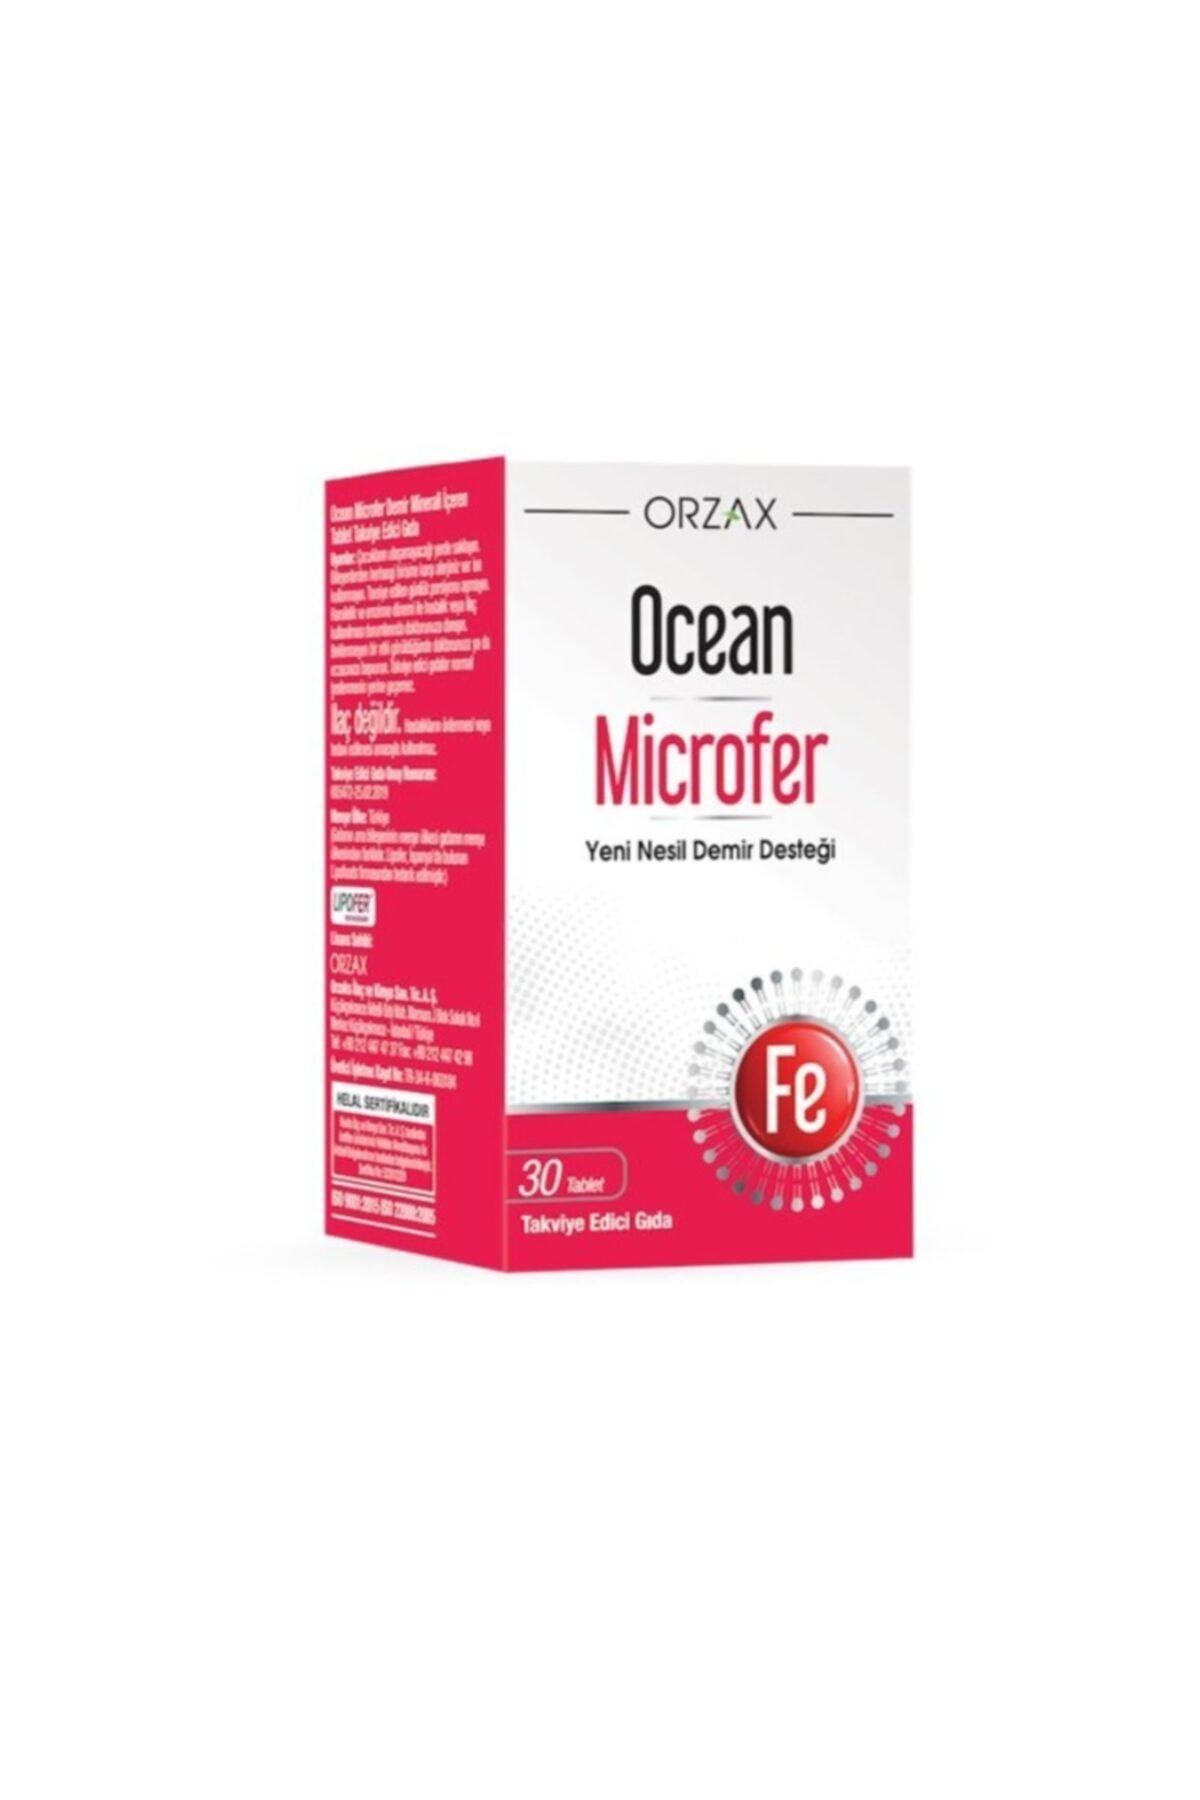 Ocean Microfer Takviye Edici Gıda 30 Tablet